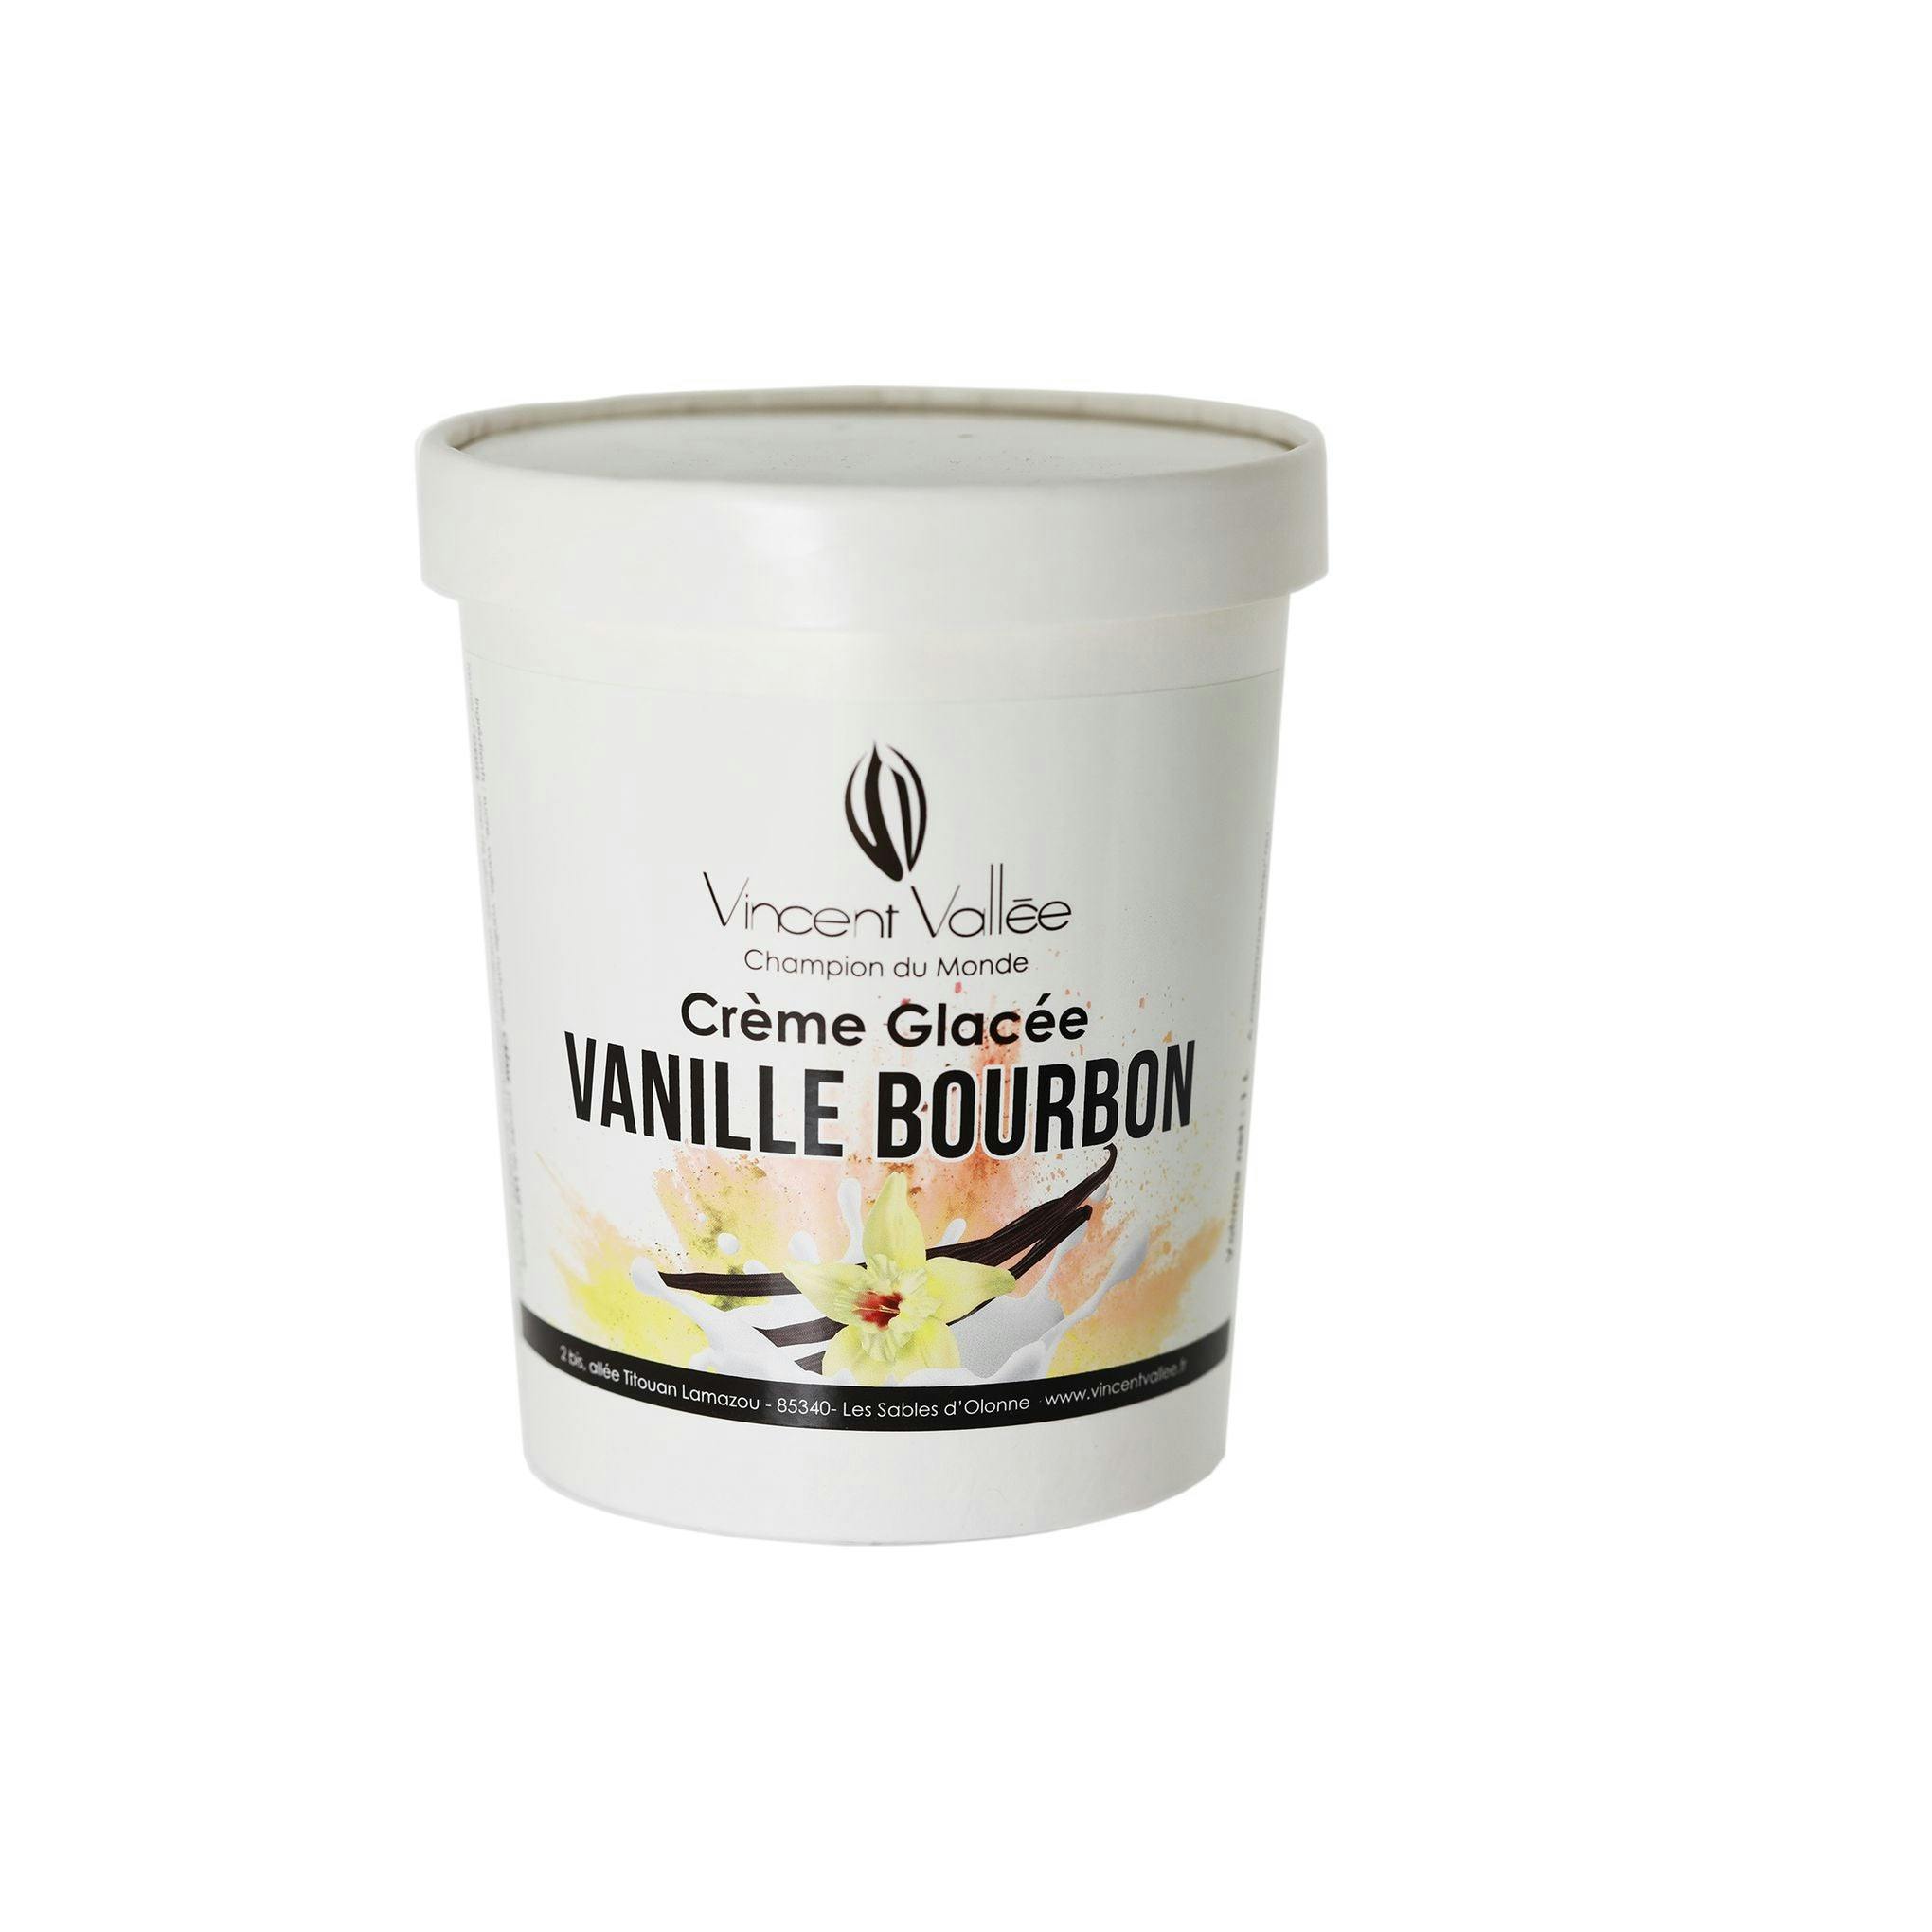 Crème glacée Vanille Bourbon - Vincent Vallée world champion chocolatier